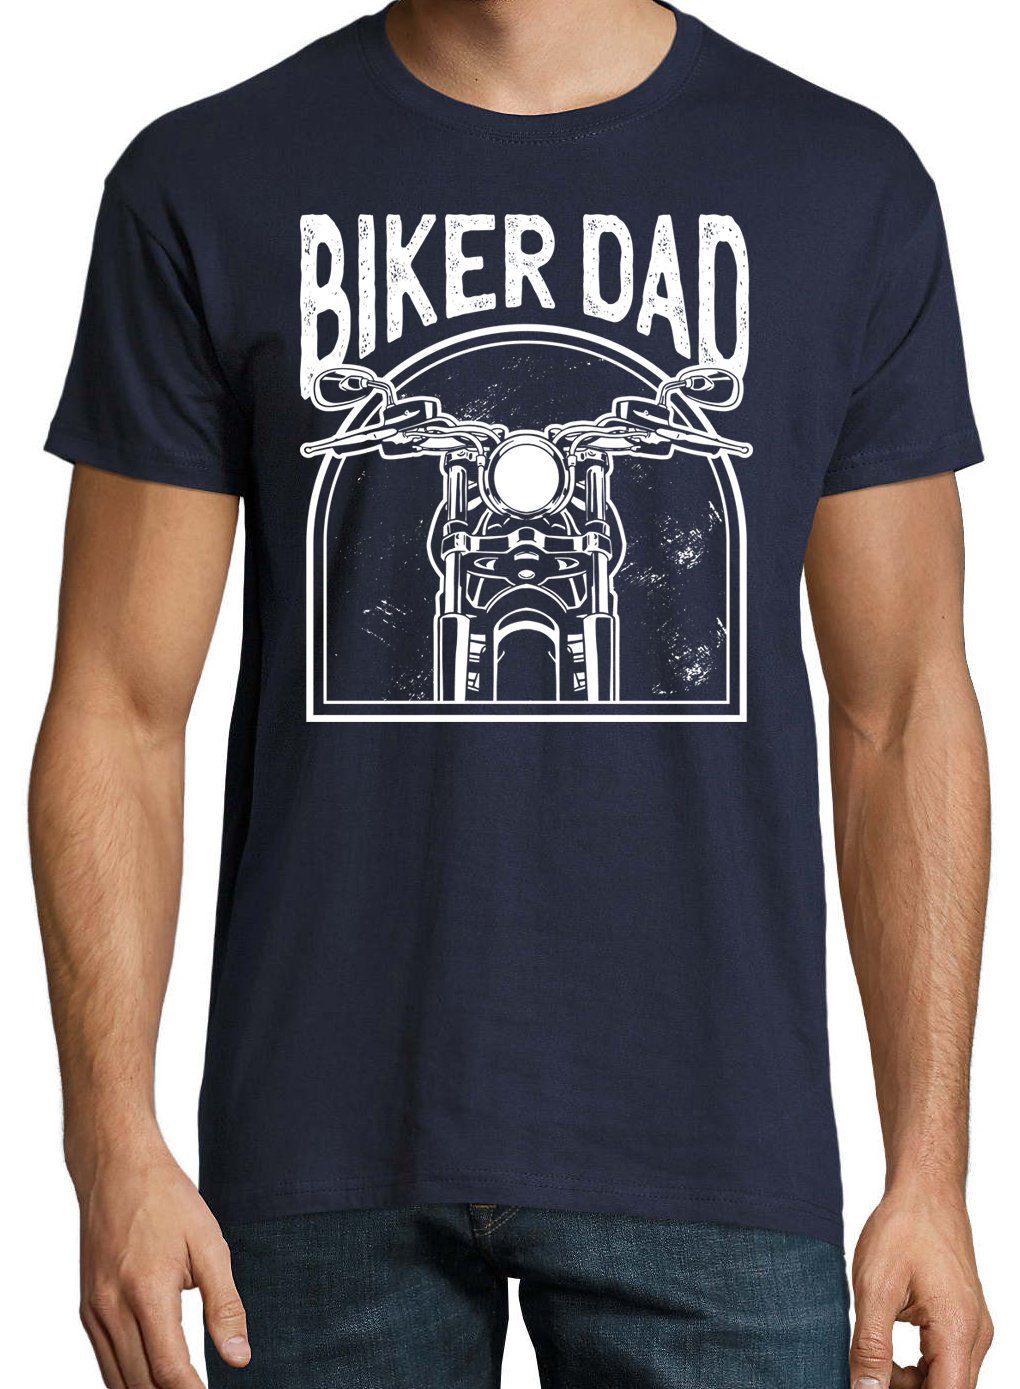 Youth Designz T-Shirt "Biker Dad" mit Herren Navyblau Frontprint trendigem Shirt